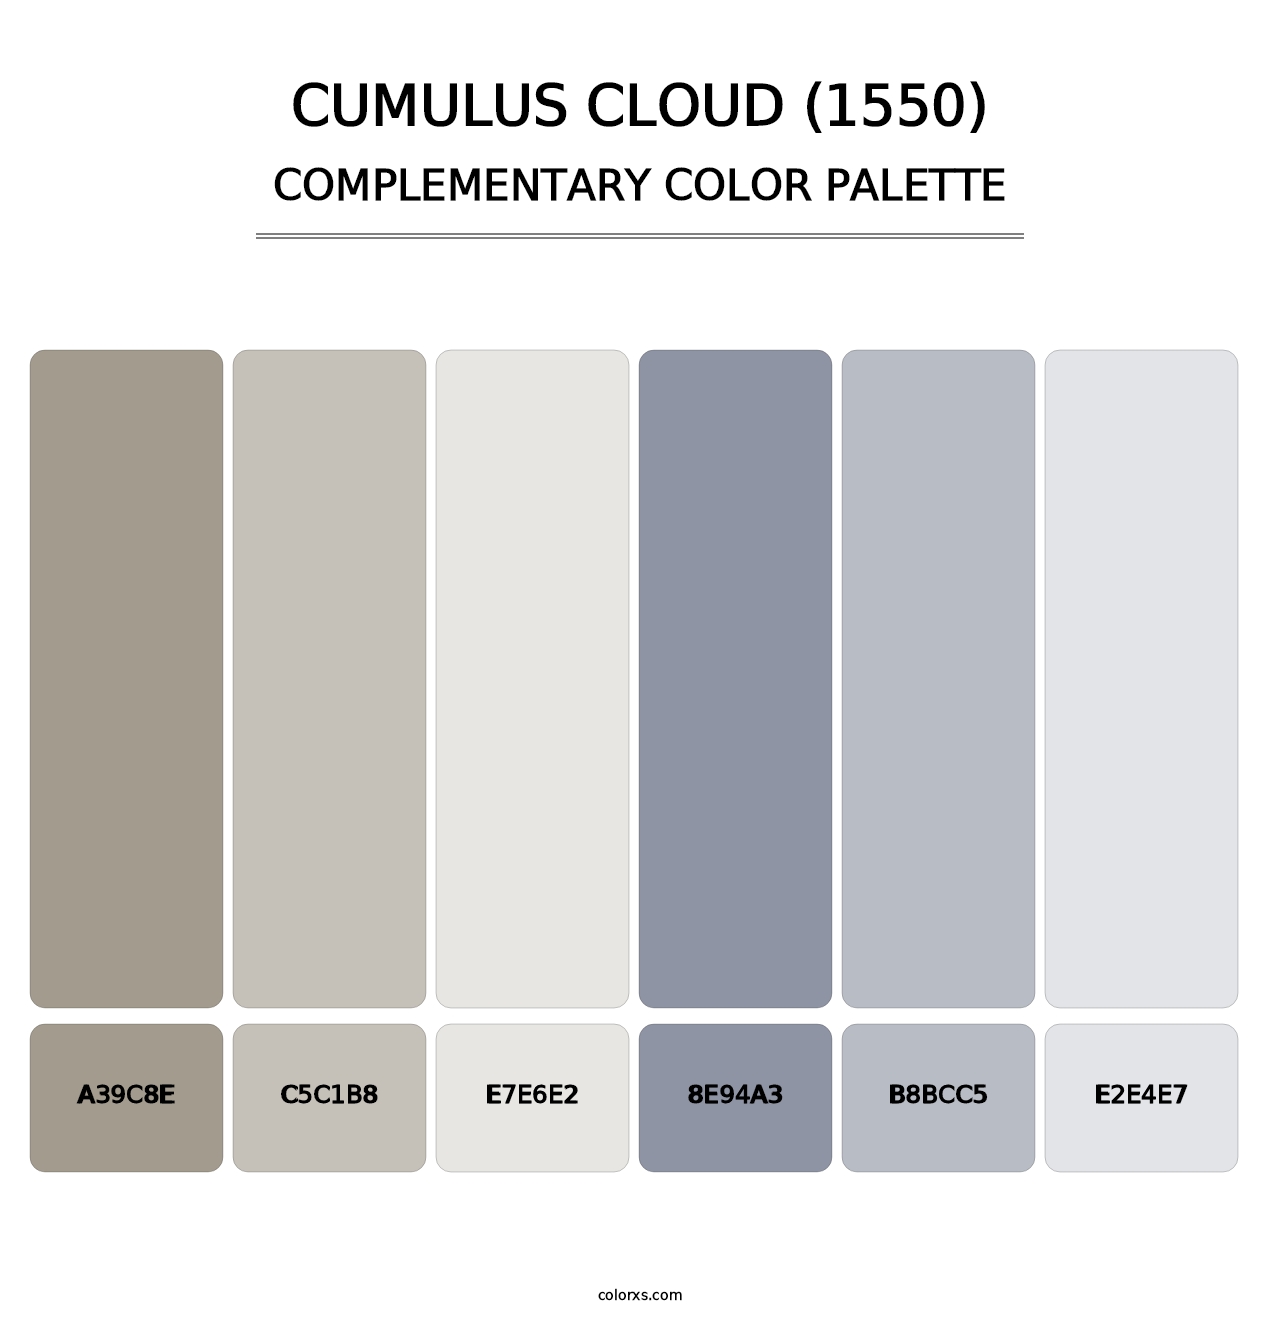 Cumulus Cloud (1550) - Complementary Color Palette